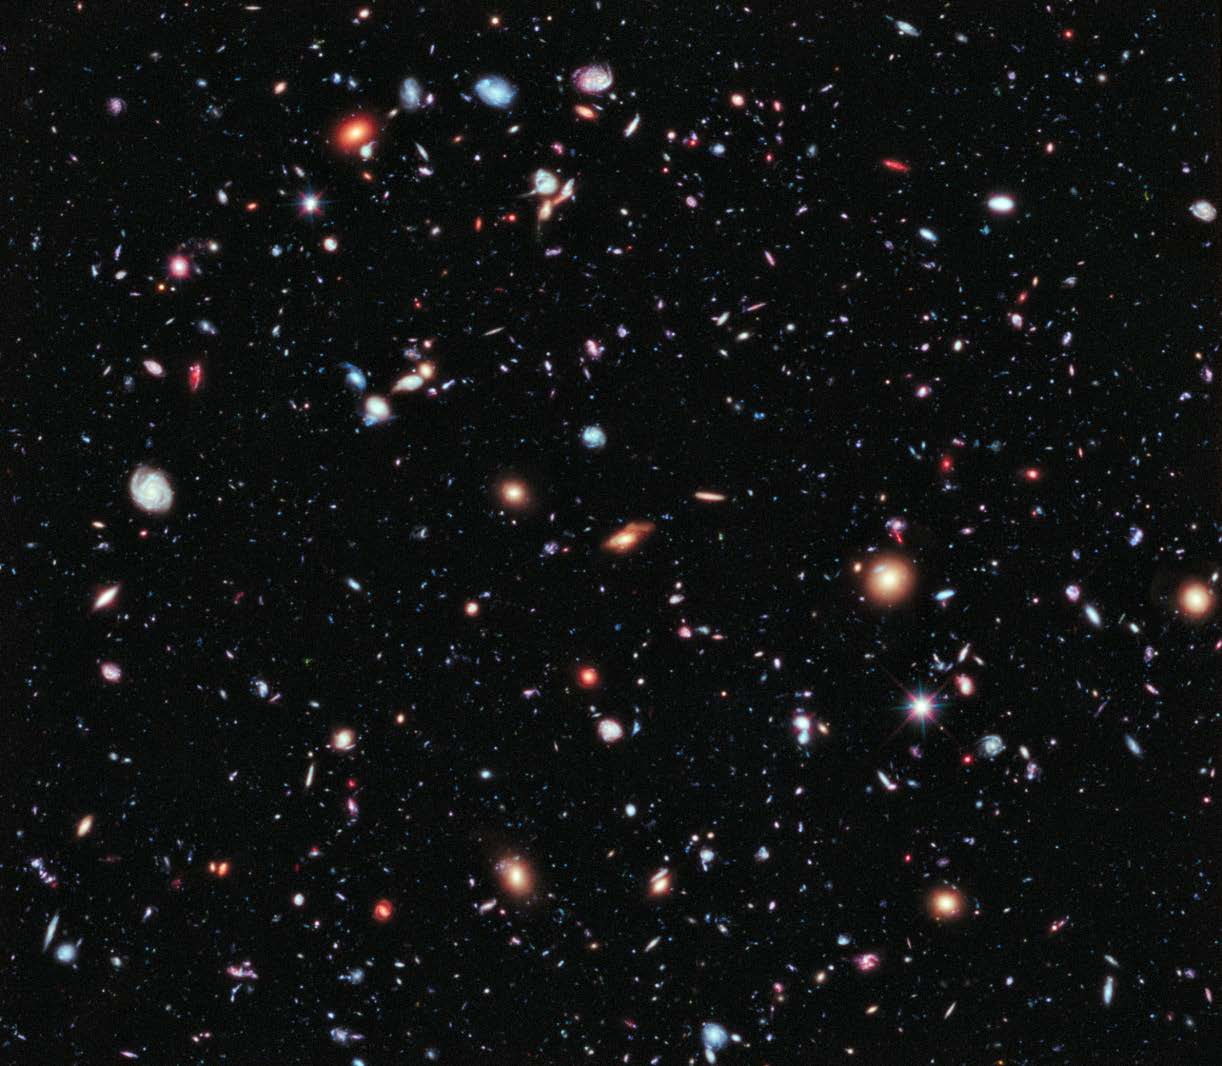 Das ferne Universum Das Hubble extreme Deep Field eine extrem lange Belichtung durch das Weltraumteleskop Hubble Summe von 2000 Einzelaufnahmen Gesamte Belichtungszeit: 23 Tage